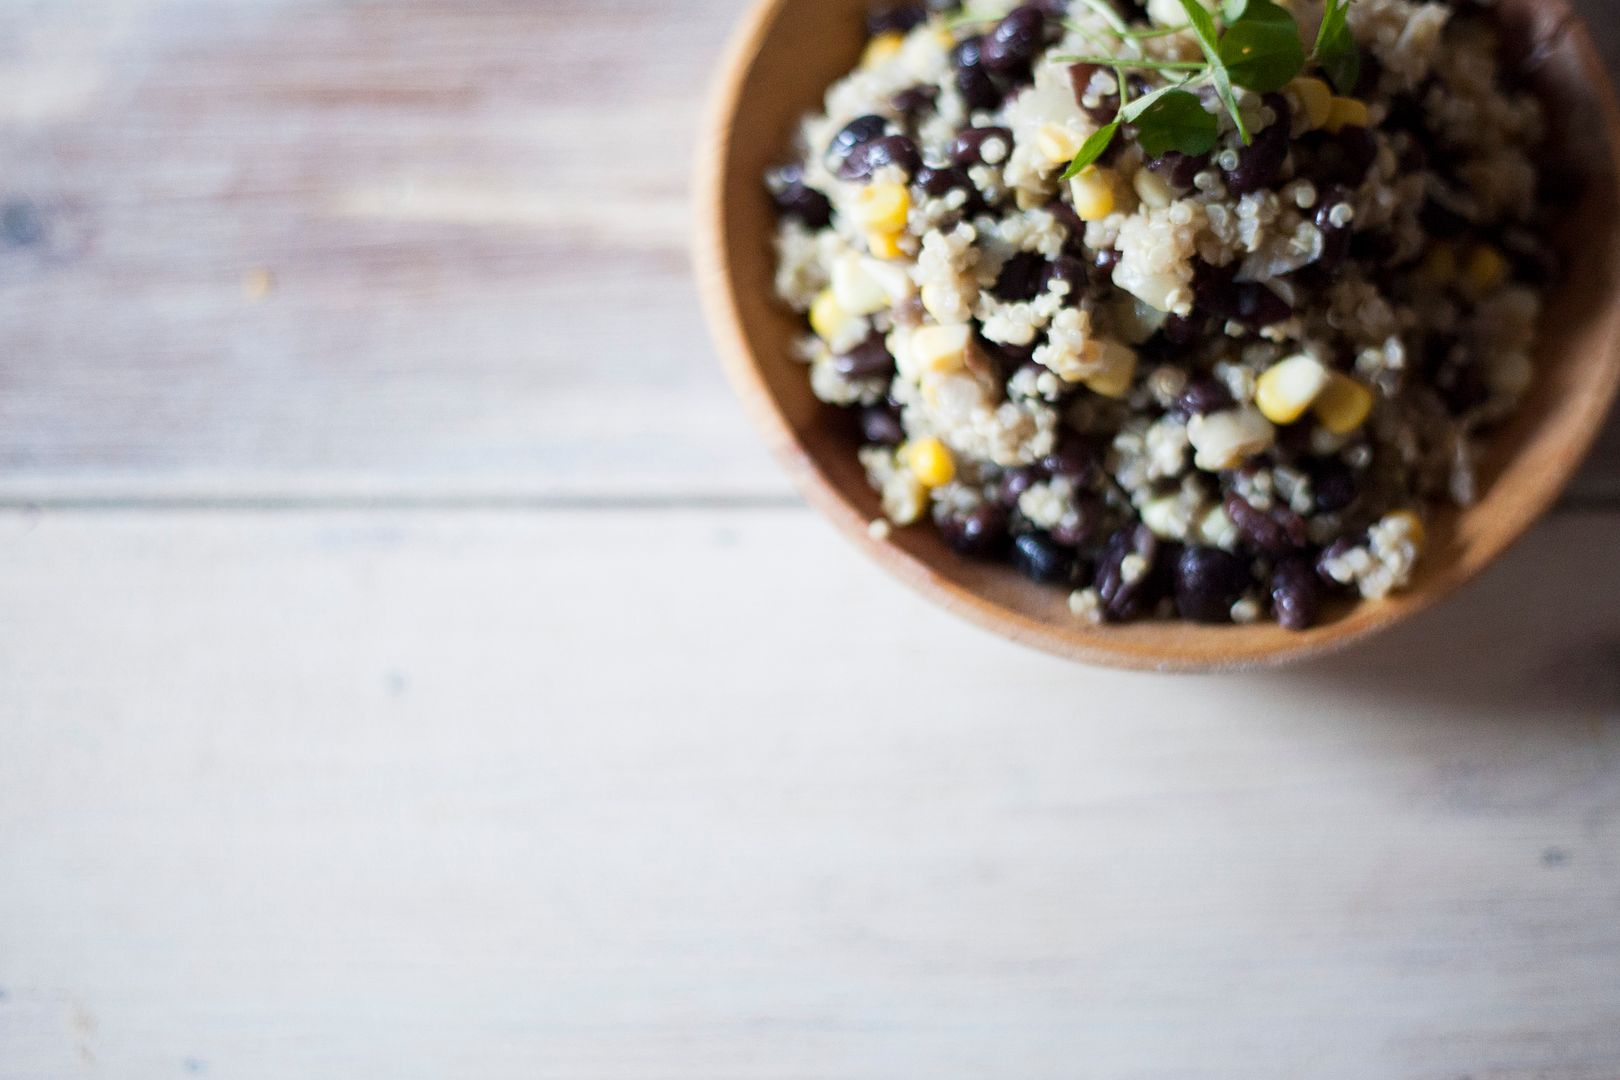 Quinoa Black Bean Salad